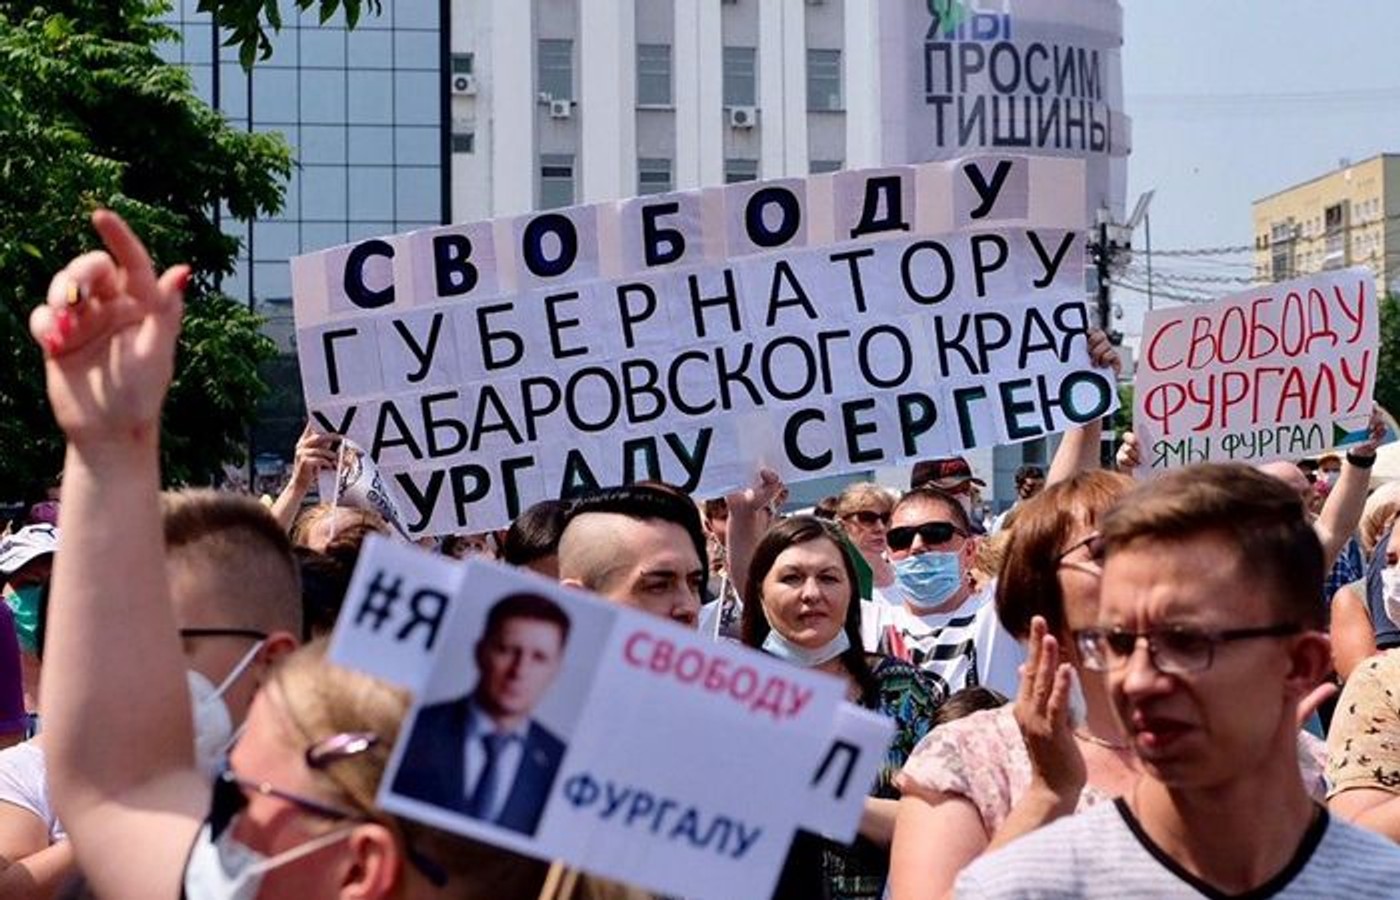 Сина Сергія Фургала затримали за заклики виходити на мітинги в підтримку батька - П'ятий канал і РЕН ТВ